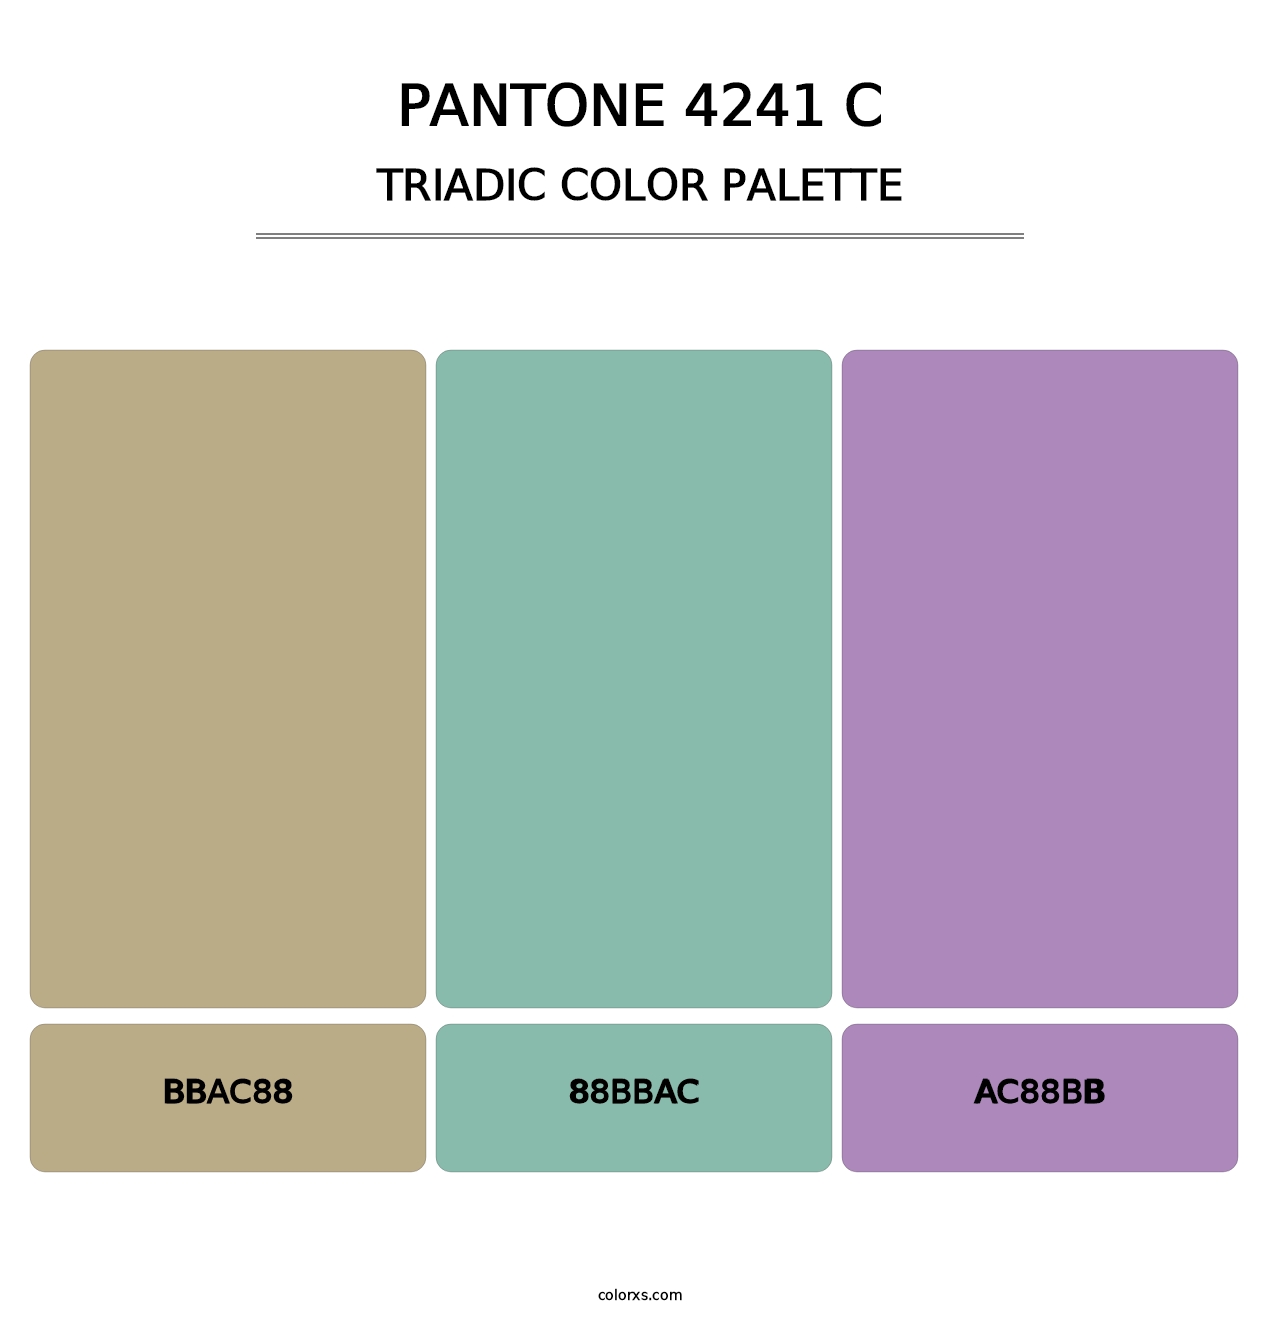 PANTONE 4241 C - Triadic Color Palette